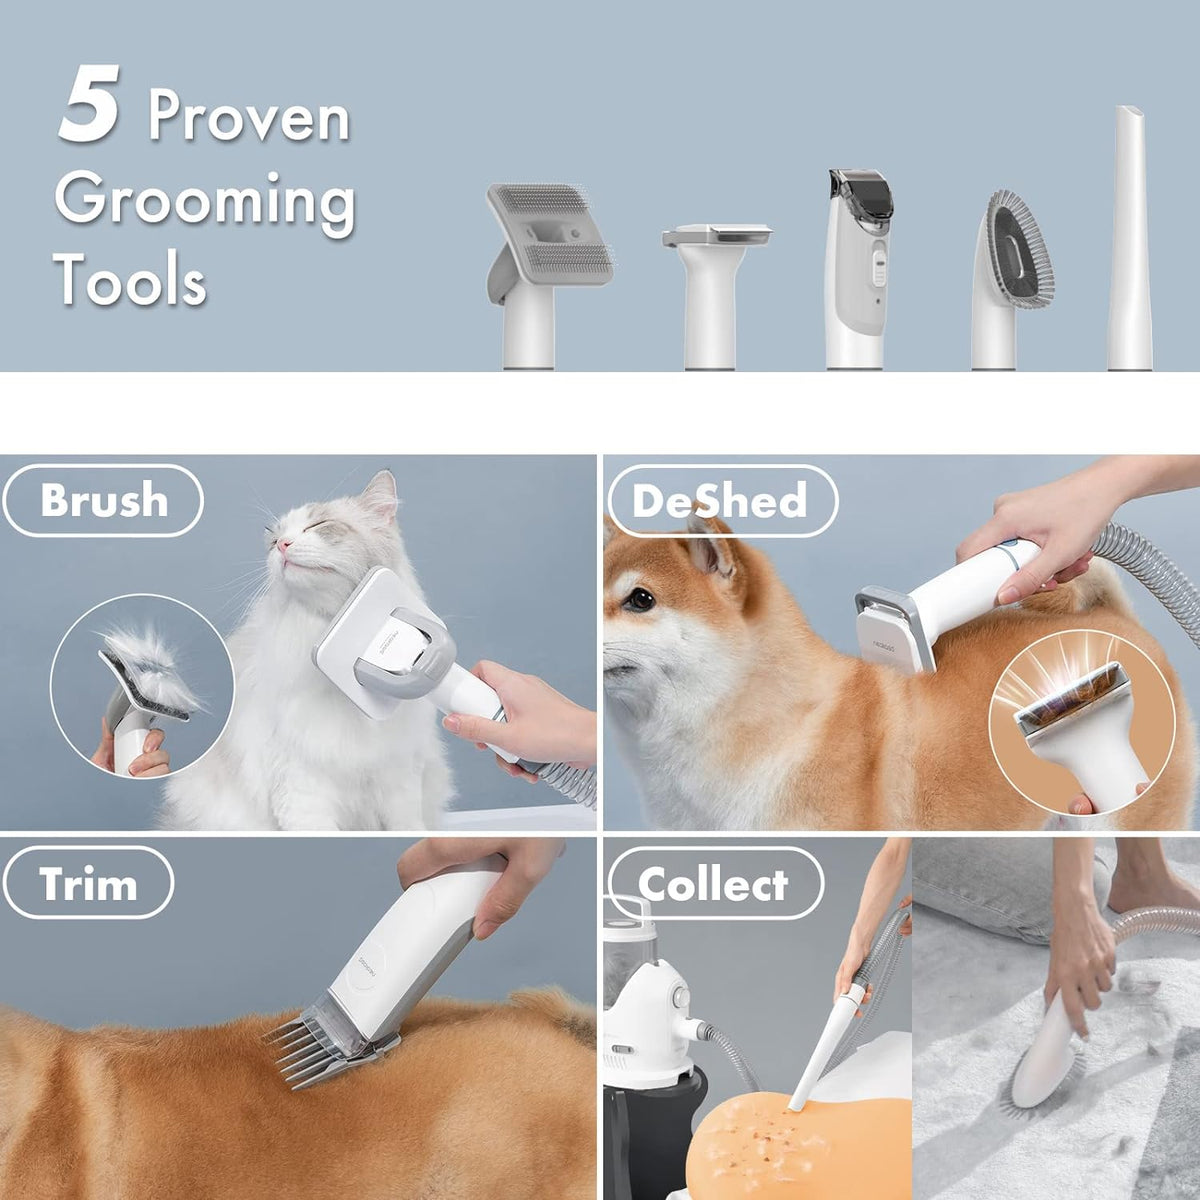 NEAKASA Pet Grooming Vacuum P2 Pro